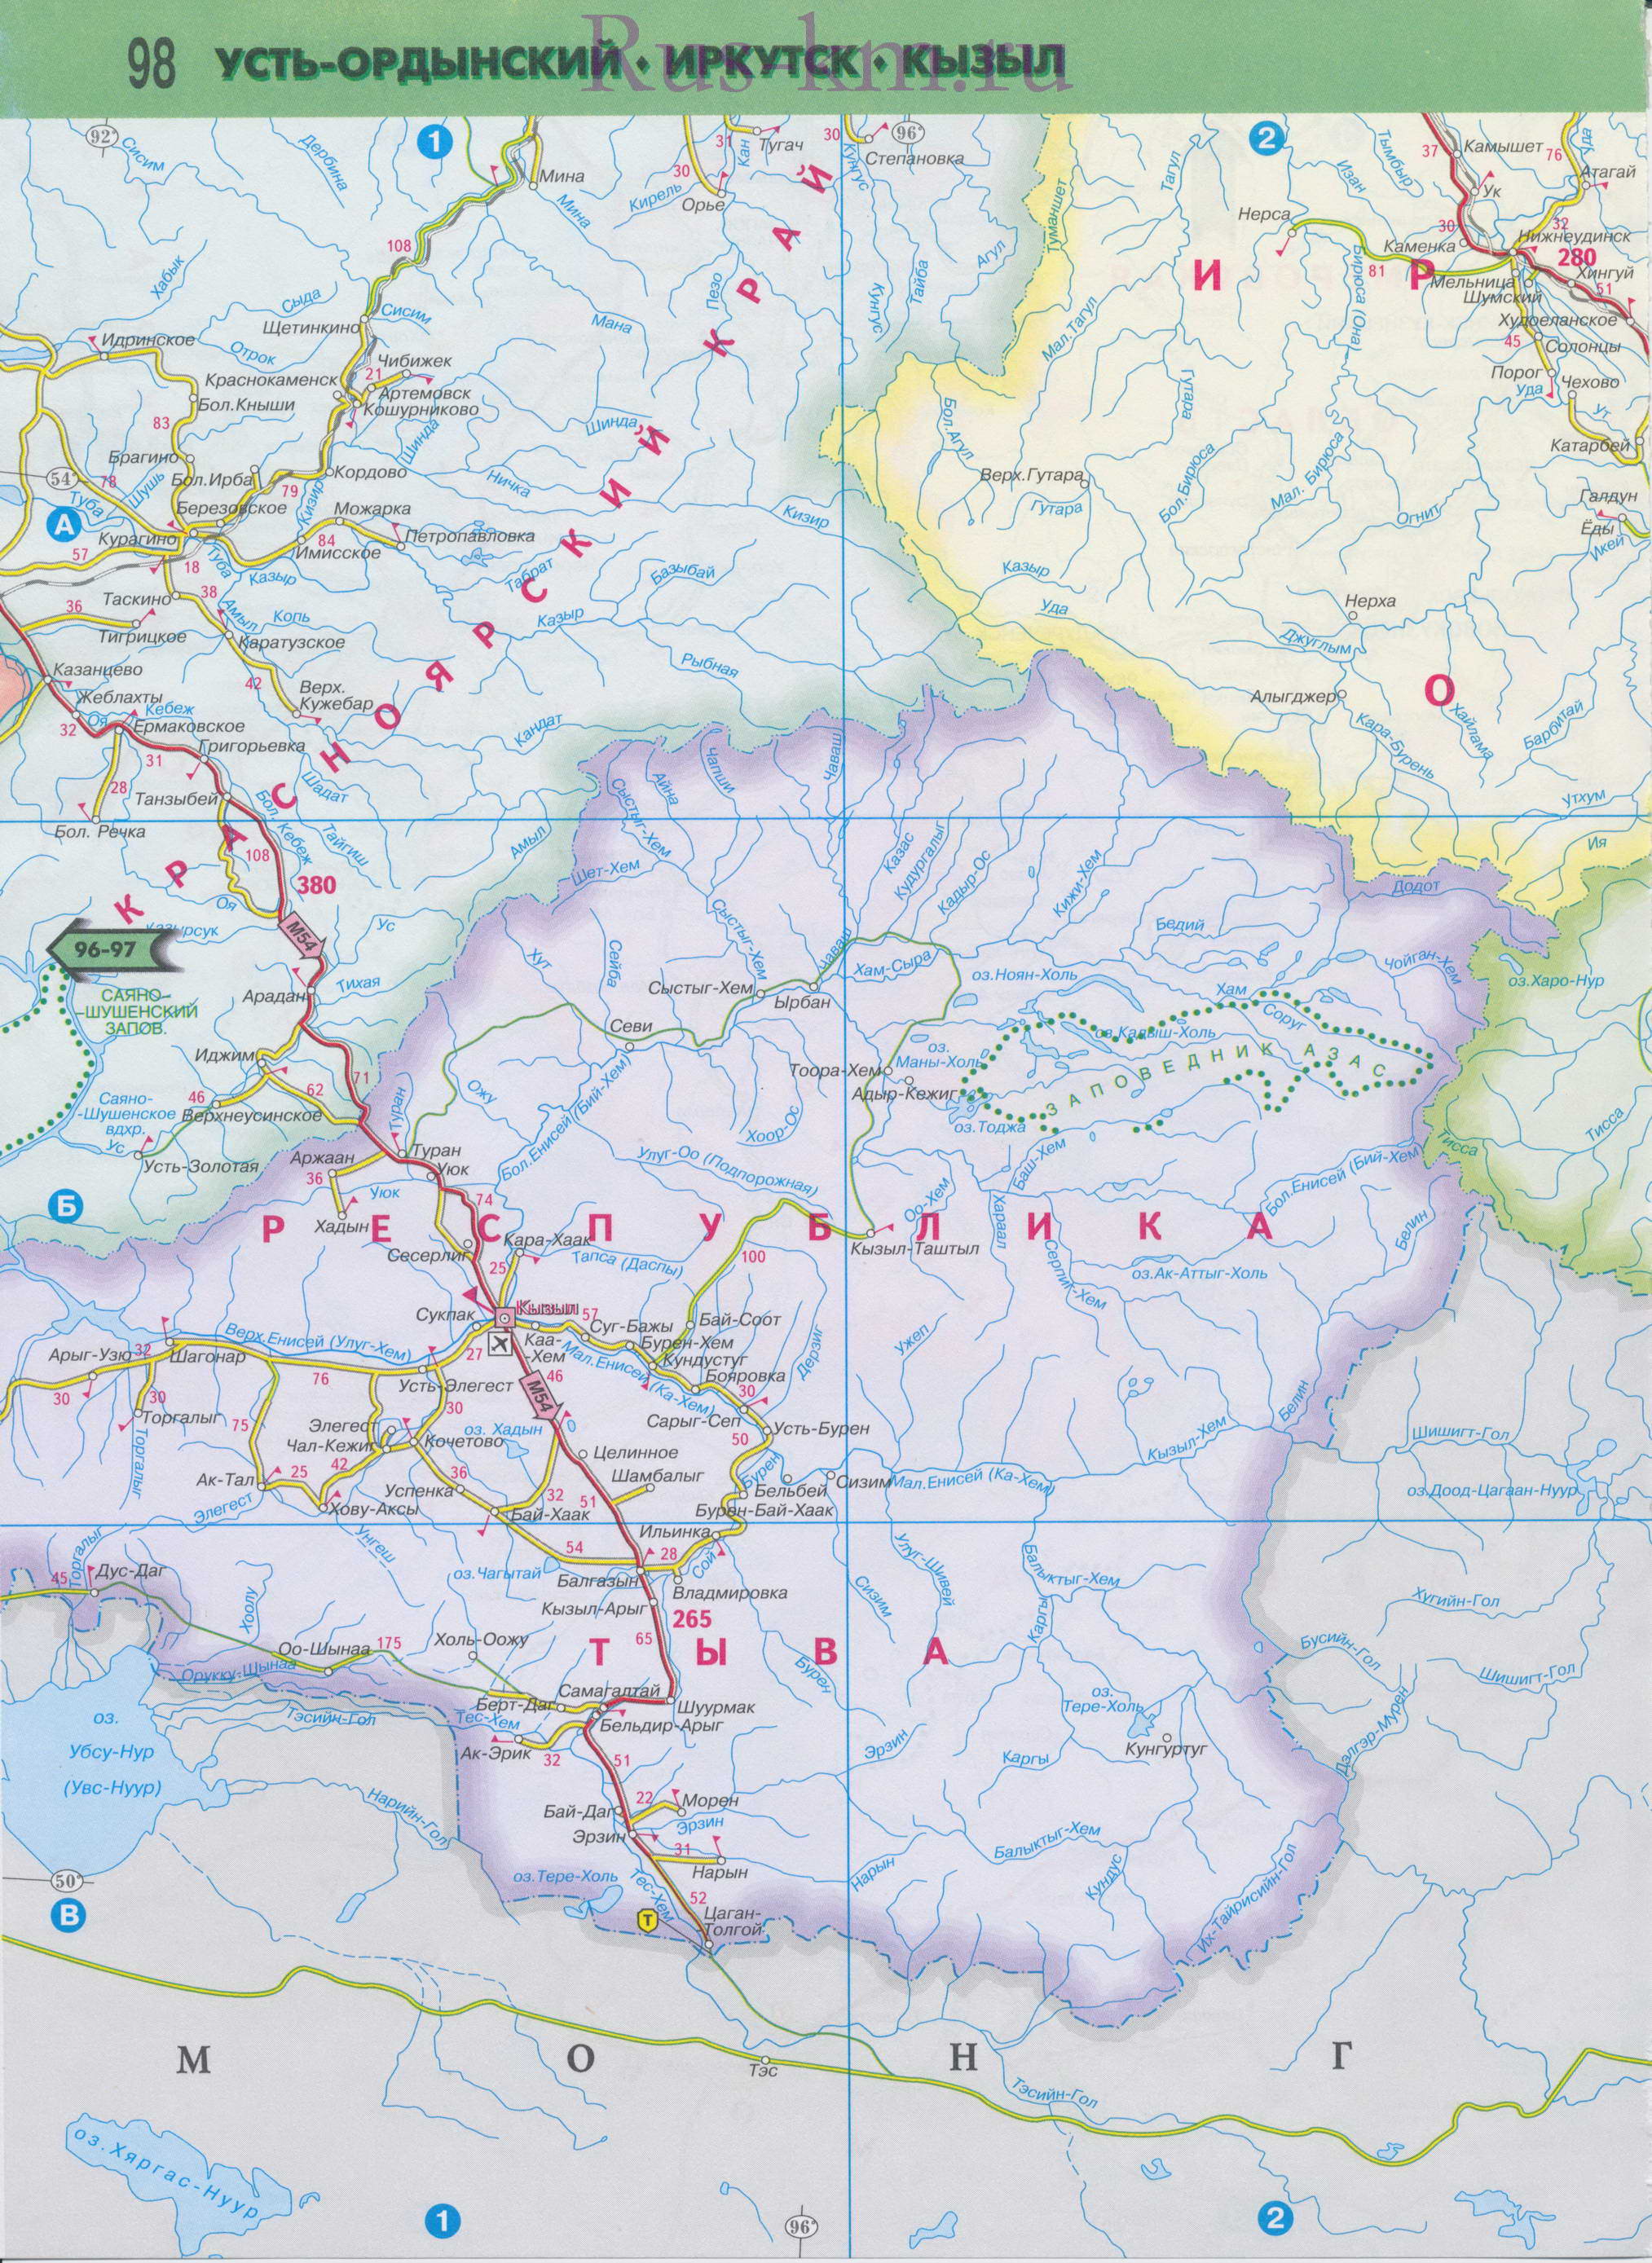 Карта Тывы. Автомобильная карта республики Тыва и соседних регионов Сибири, масштаб 1см:25км, B0 - 